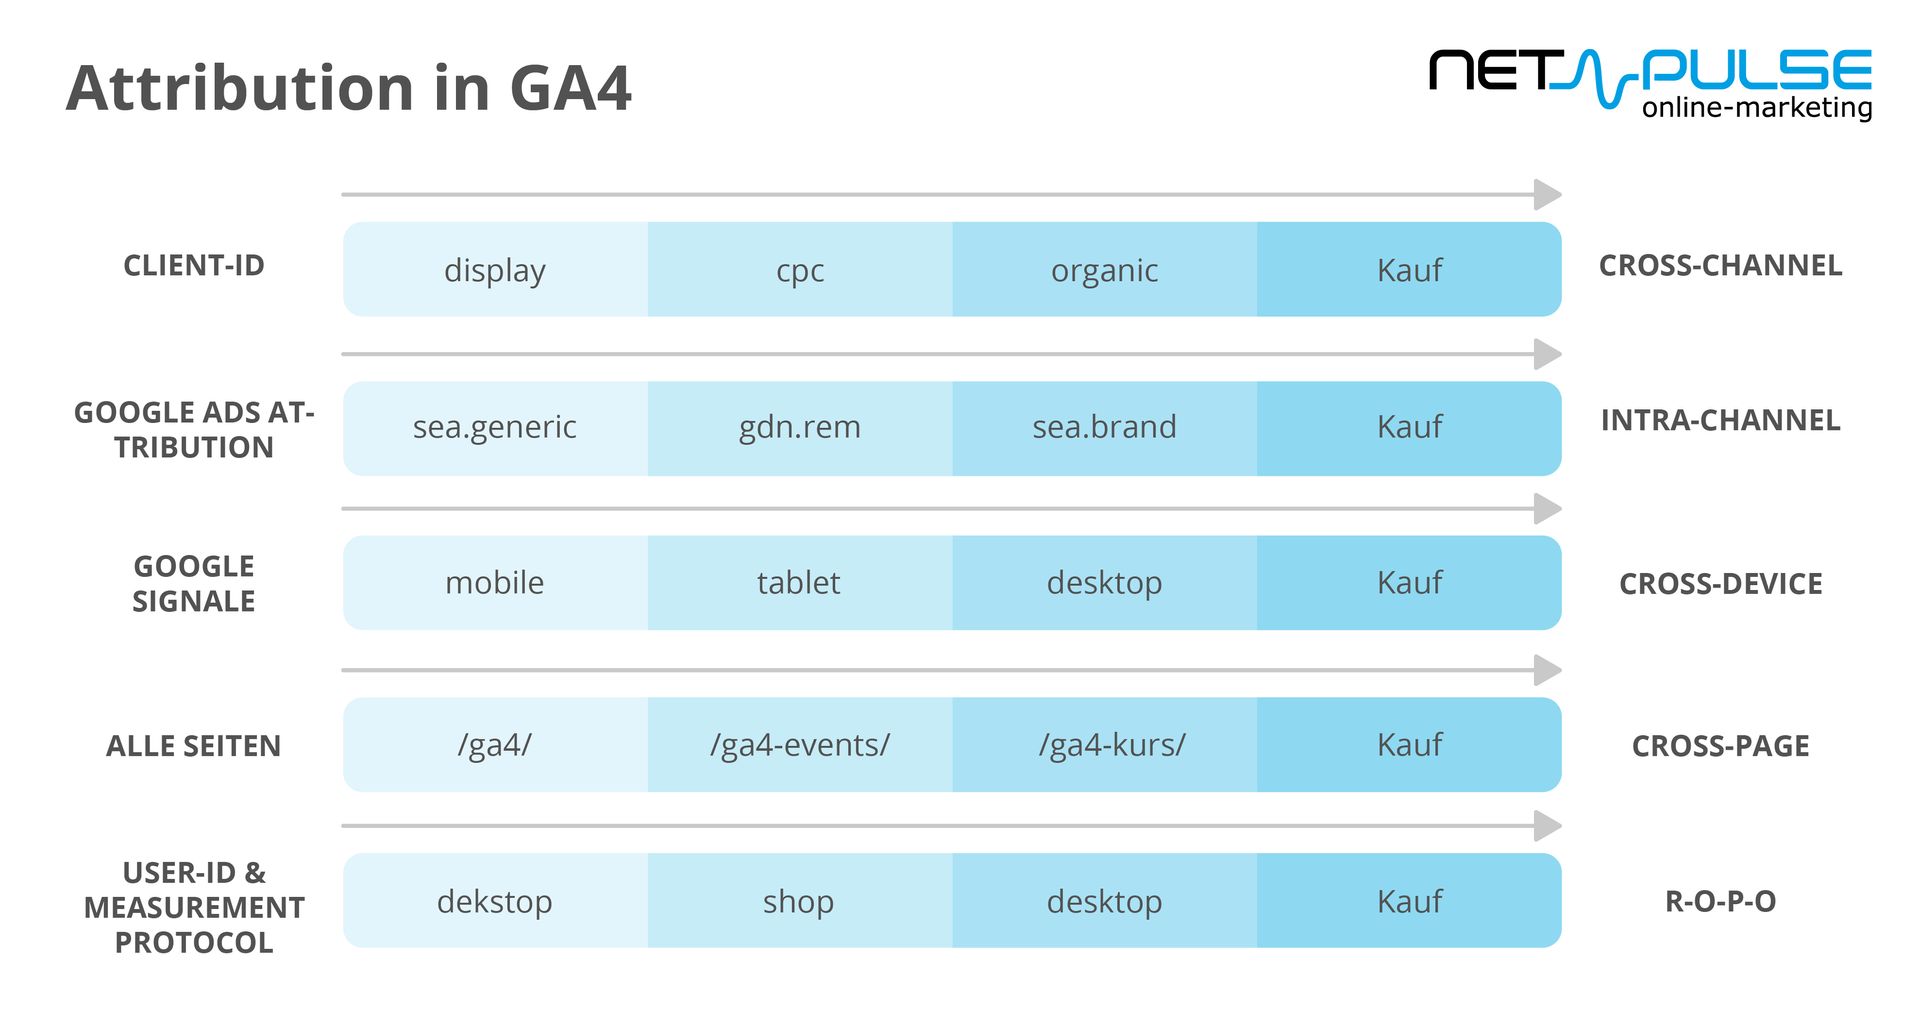 Die Grafik zeigt die Attribution in GA4 der netpulse AG